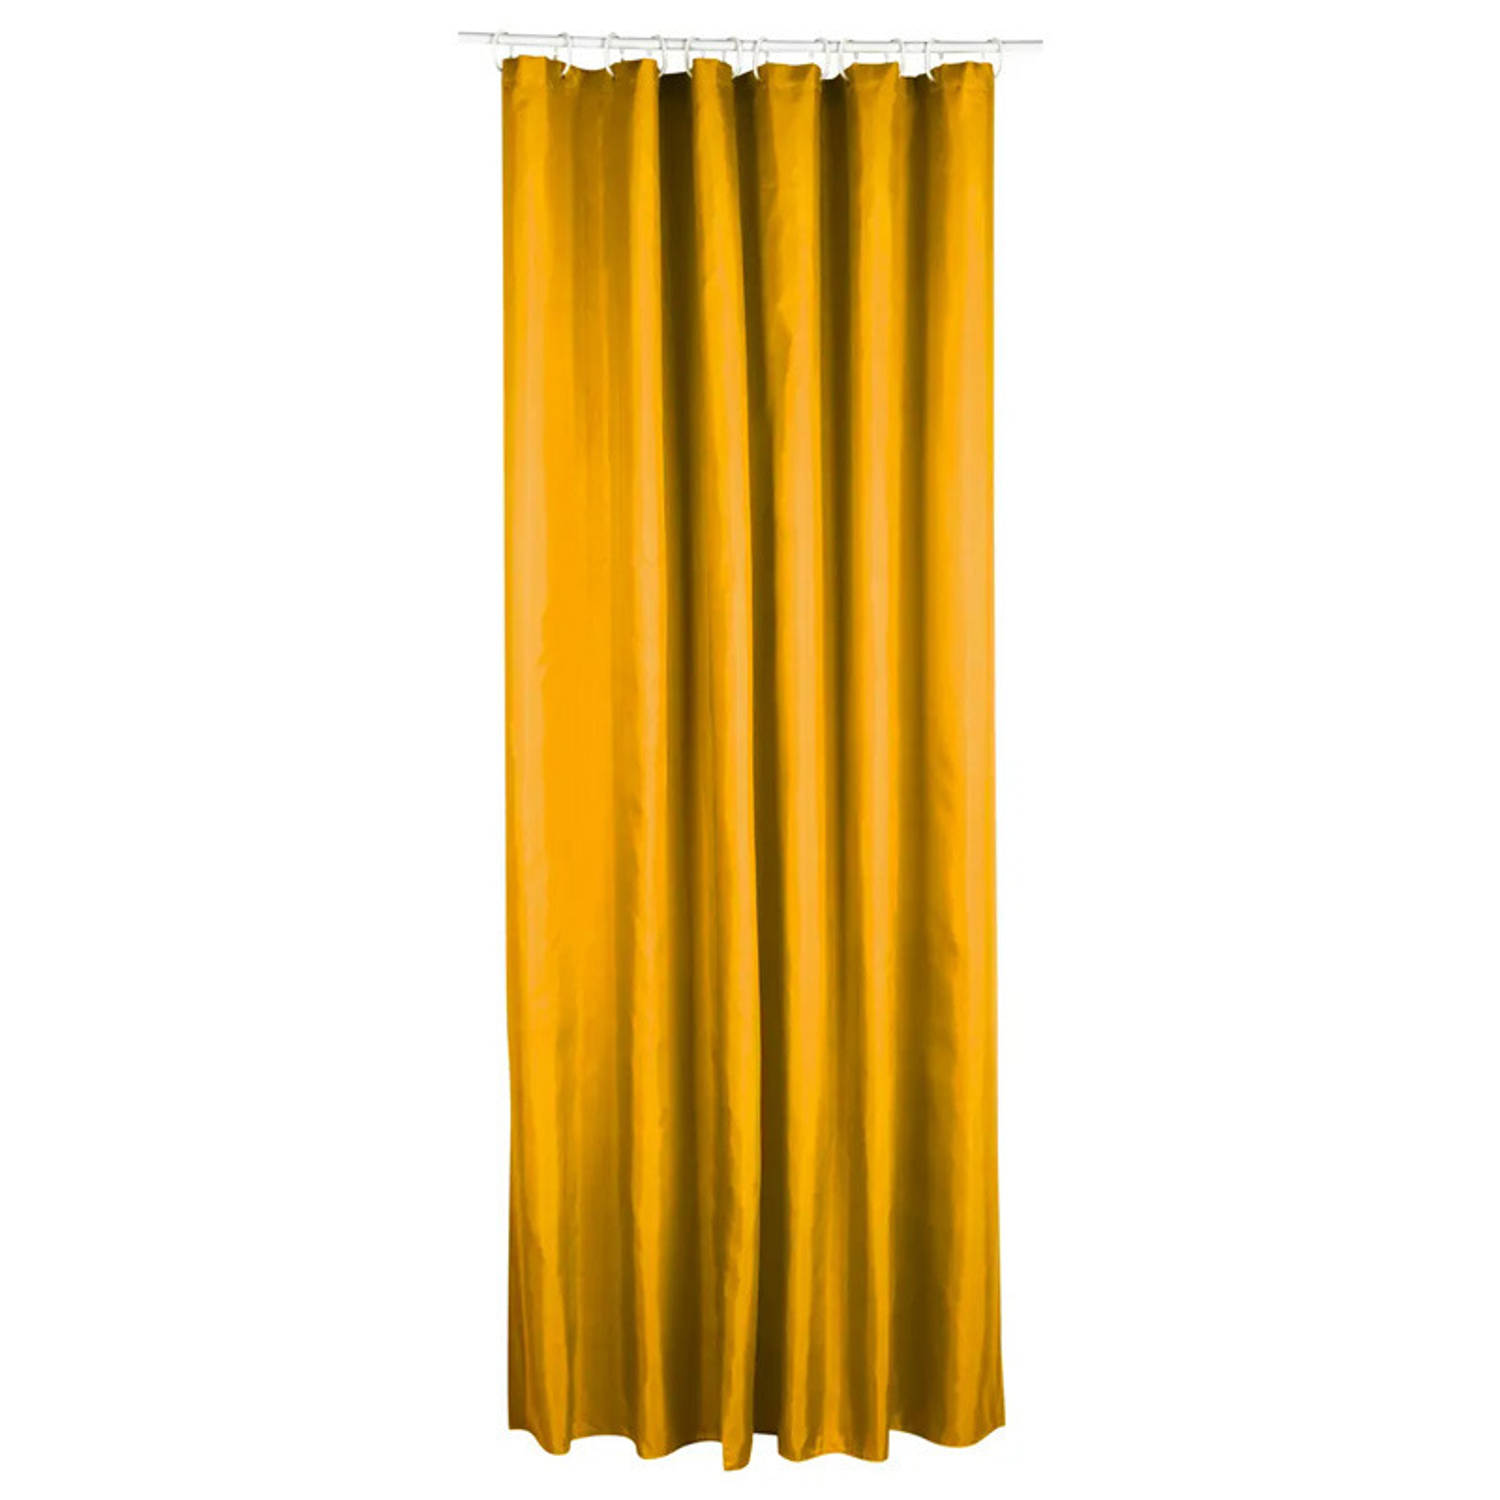 5Five Douchegordijn - geel - polyester - 180 x 200 cm - inclusief ringen - Voor bad en douche